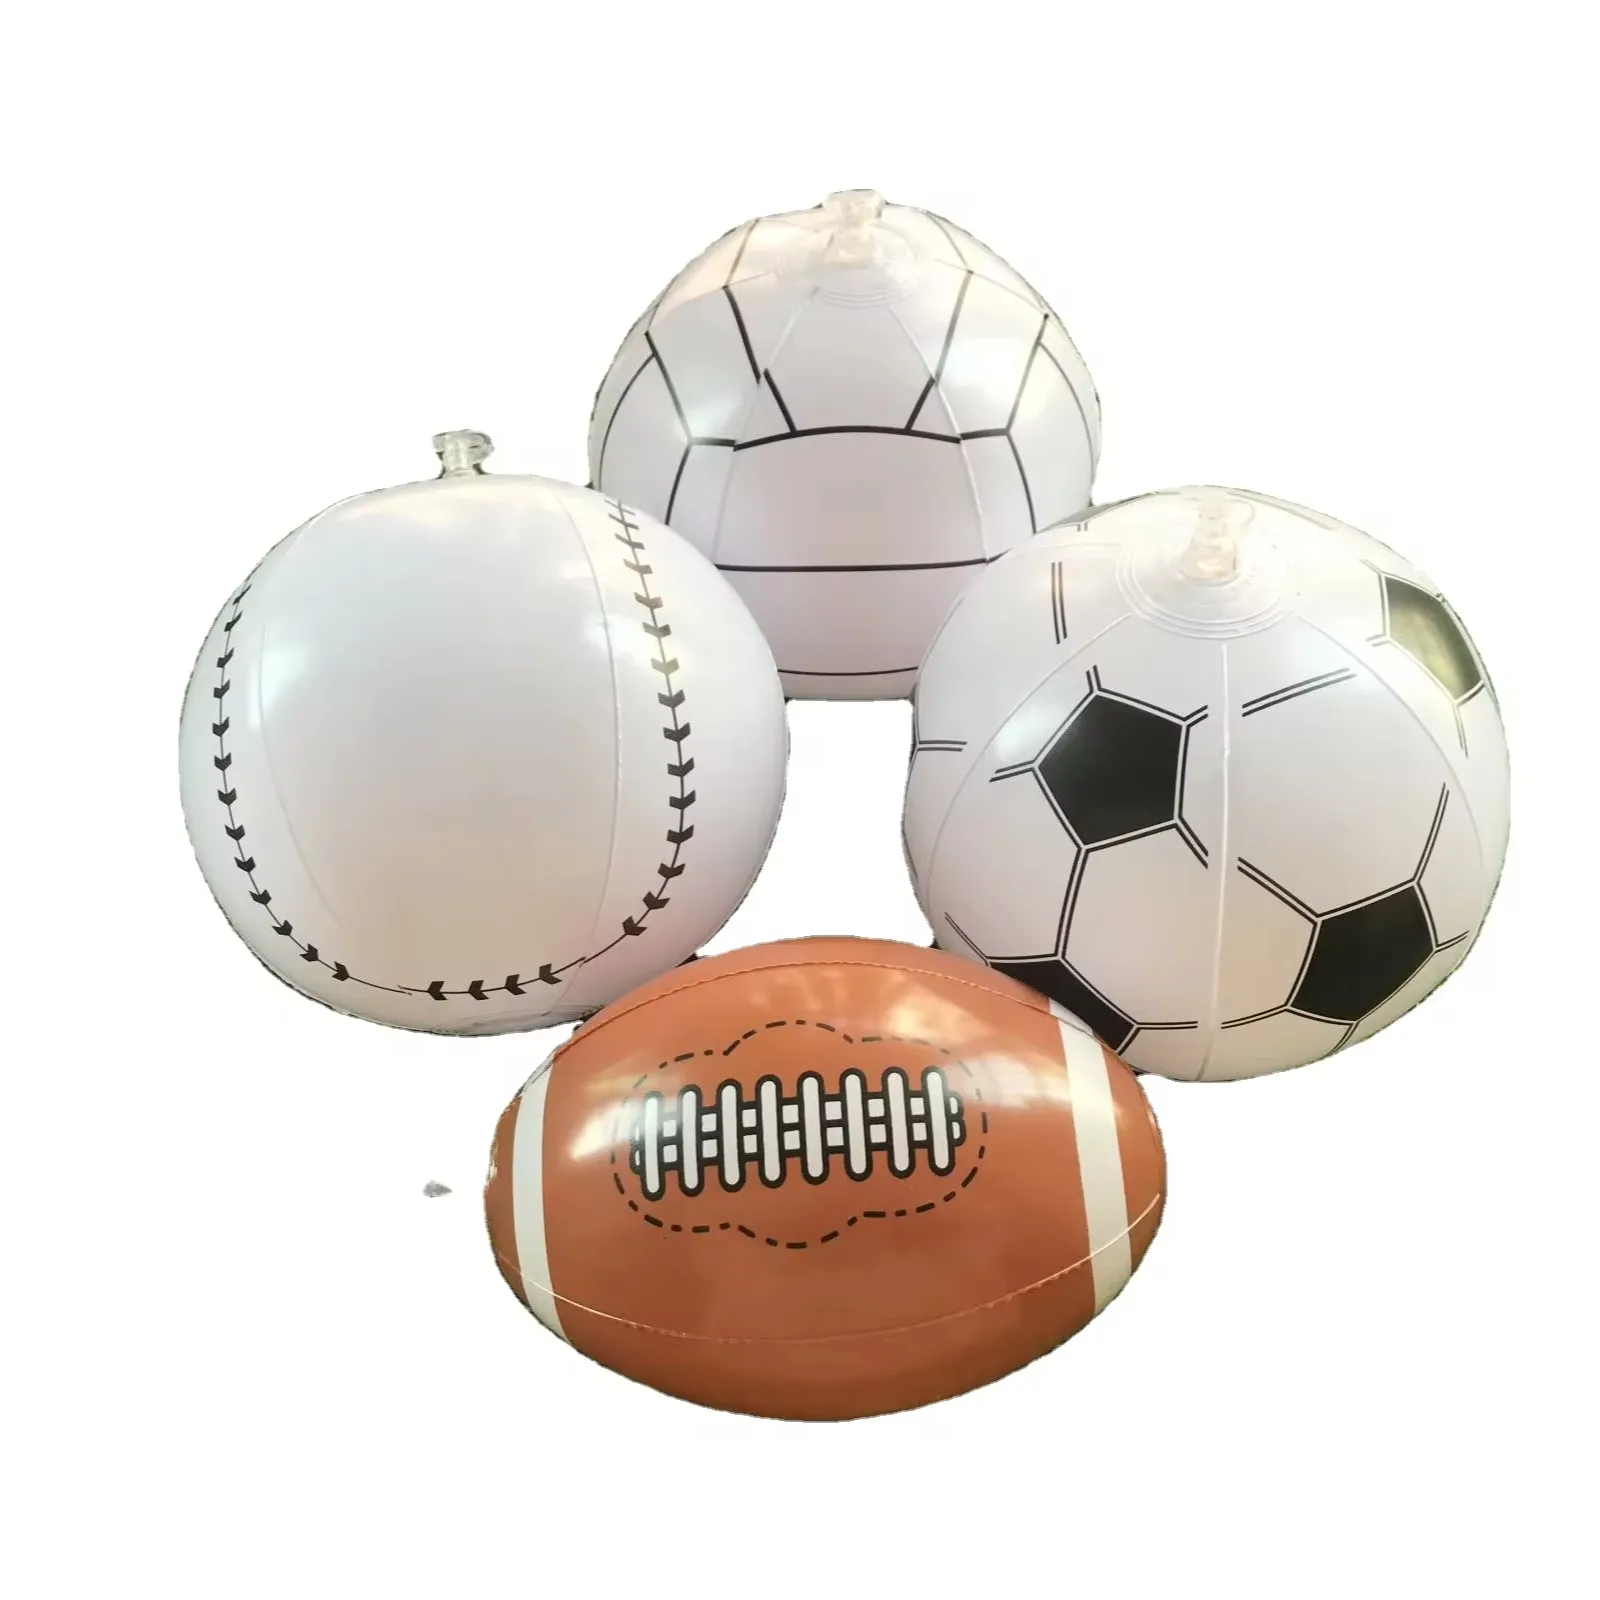 इन्फ्लेटेबल फुटबॉल बेसबॉल वॉलीबॉल रग्बी प्लास्टिक खिलौना गेंदें एक सेट में चार शैलियाँ